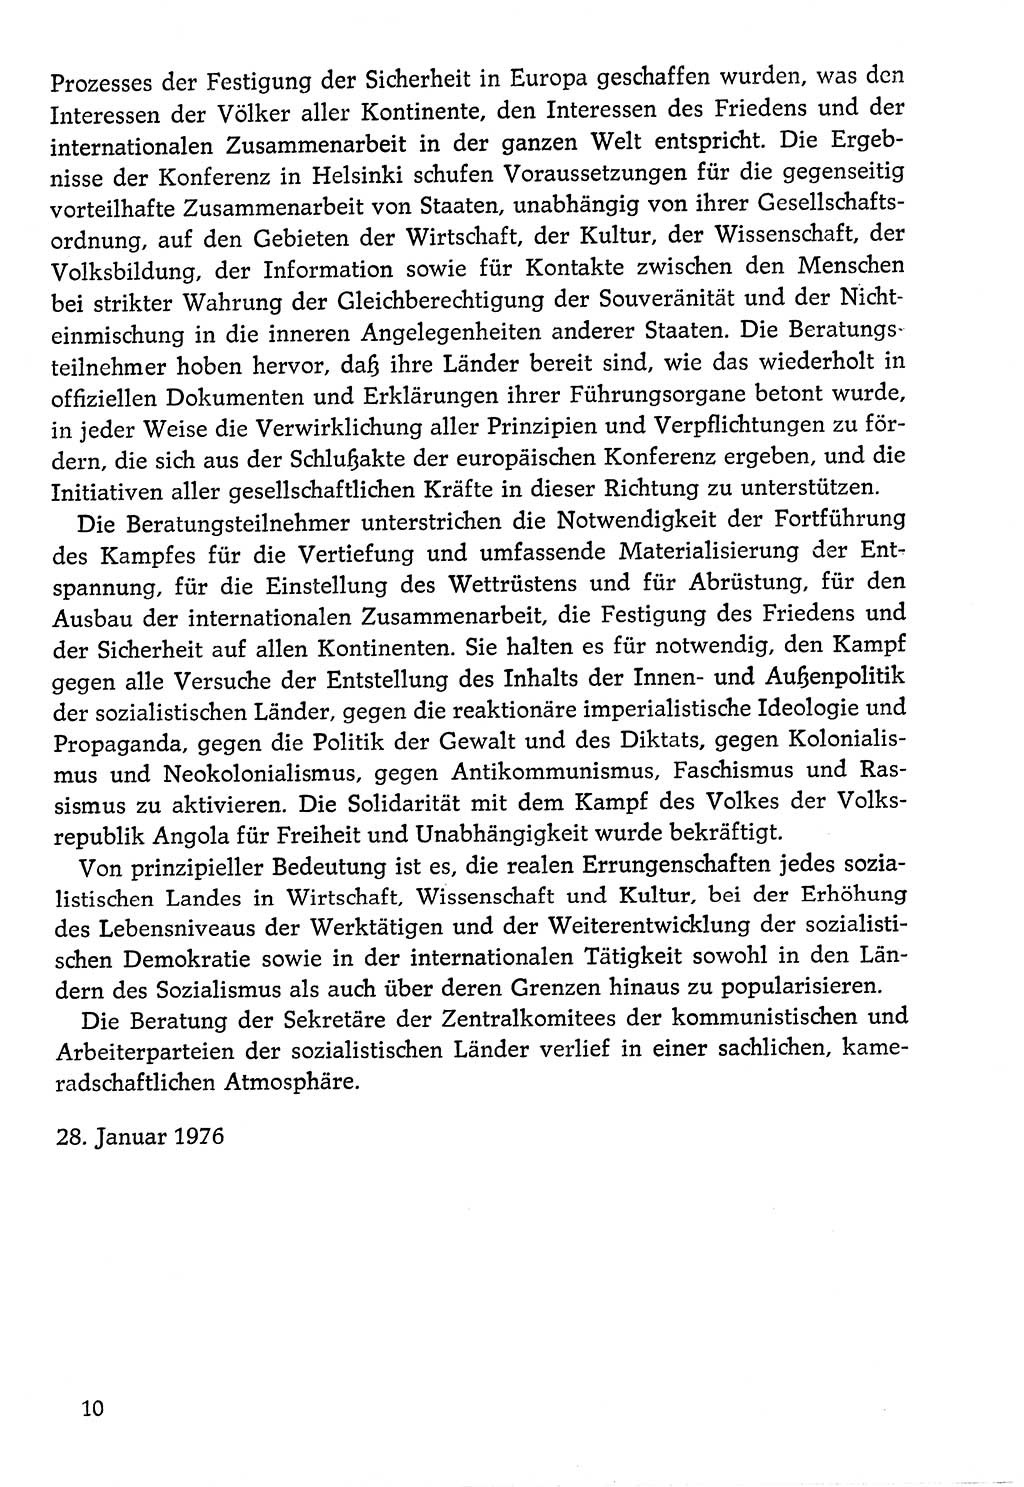 Dokumente der Sozialistischen Einheitspartei Deutschlands (SED) [Deutsche Demokratische Republik (DDR)] 1976-1977, Seite 10 (Dok. SED DDR 1976-1977, S. 10)